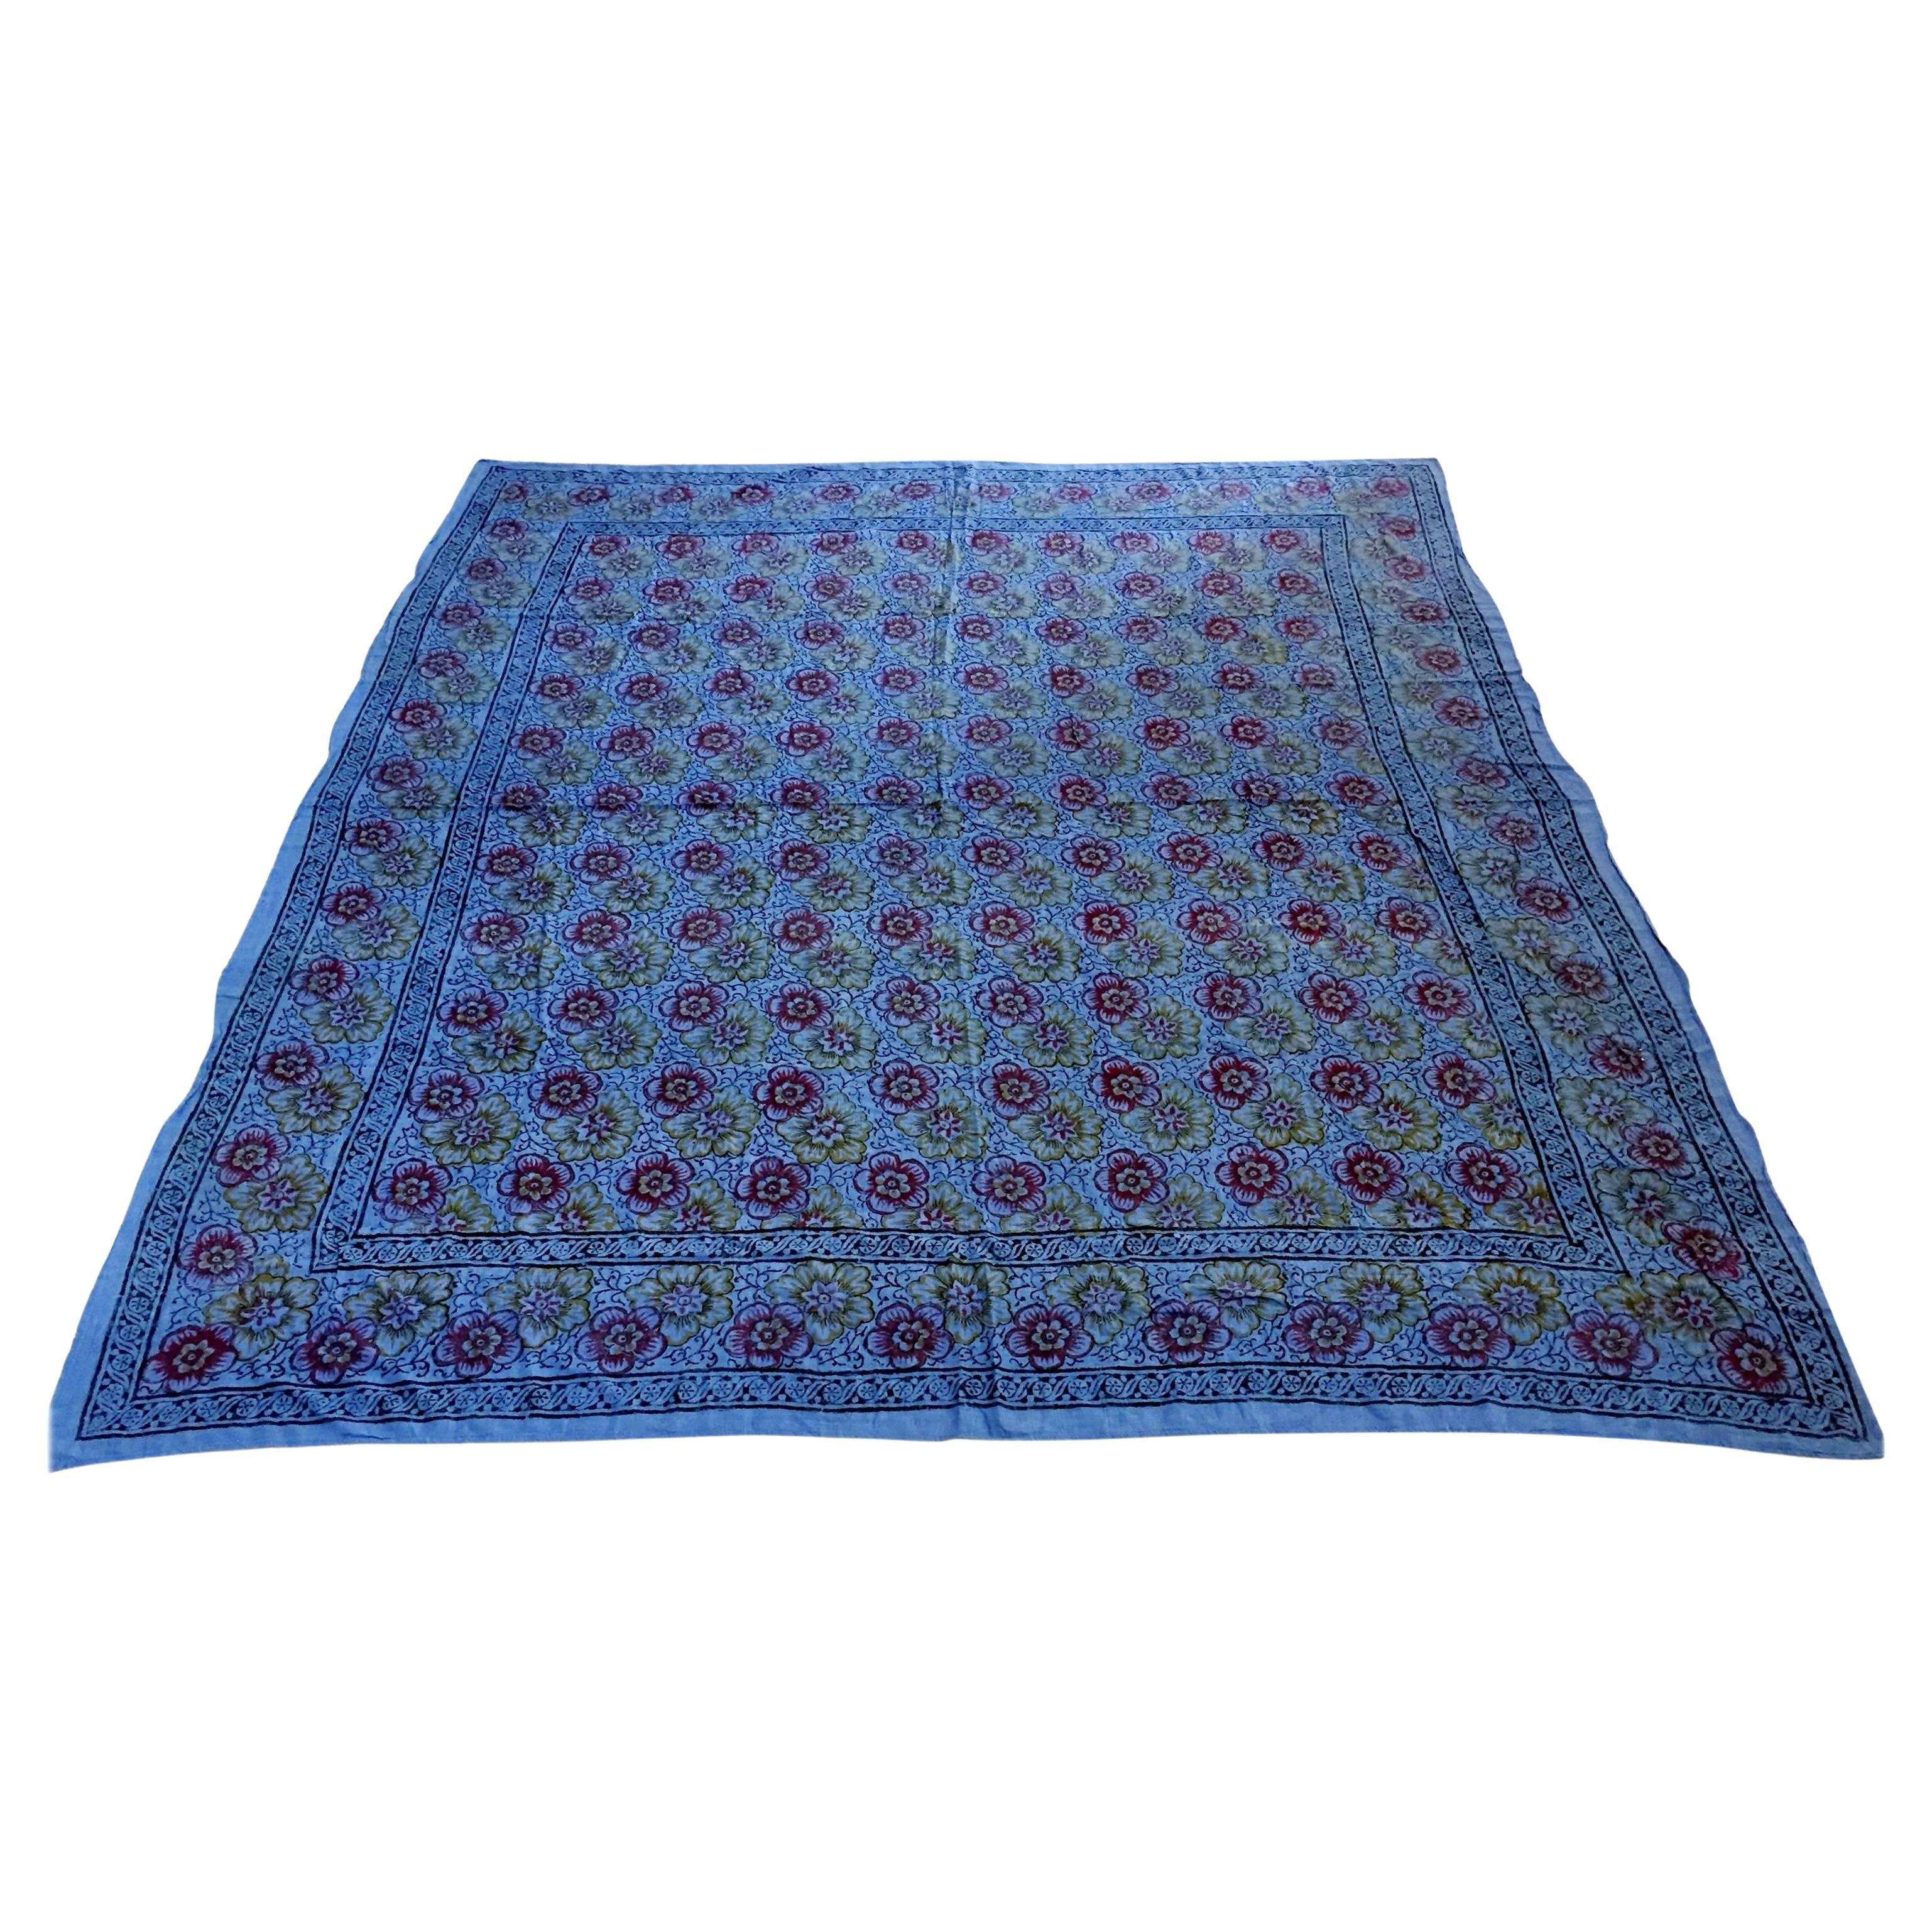 Kalamari Blue Textile from India